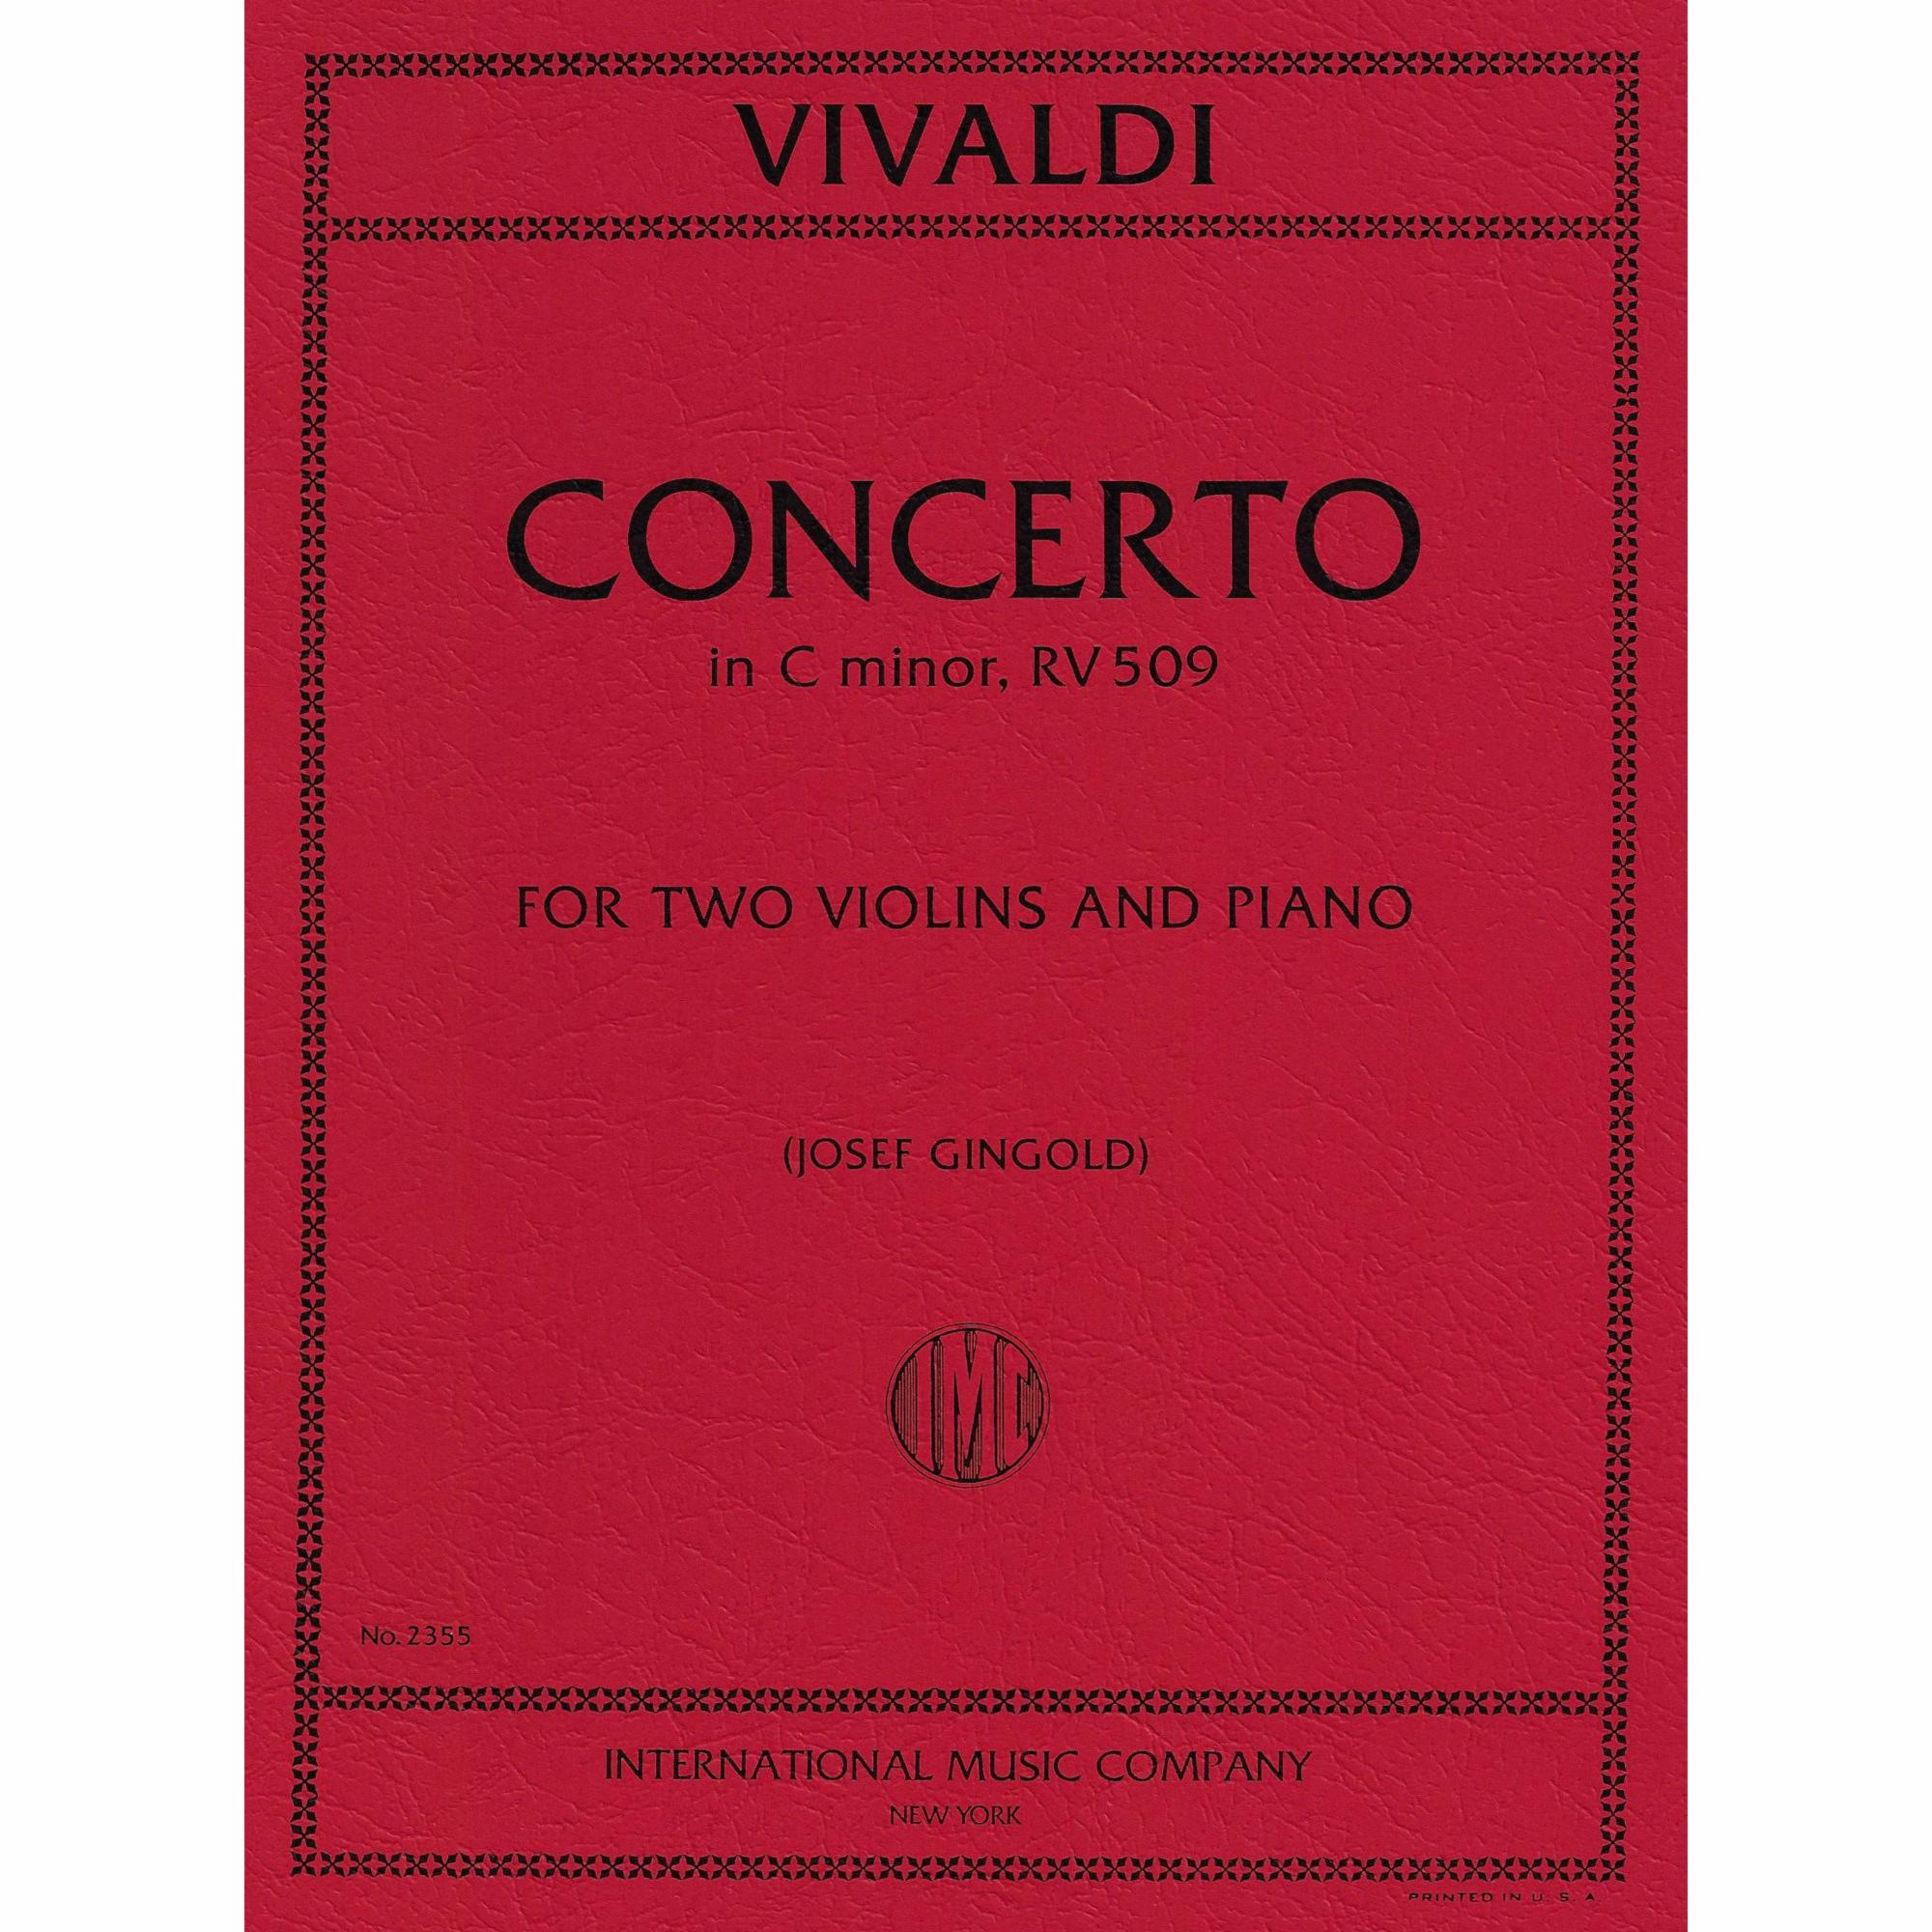 Vivaldi -- Concerto in C Minor, RV 509 for Two Violins and Cello